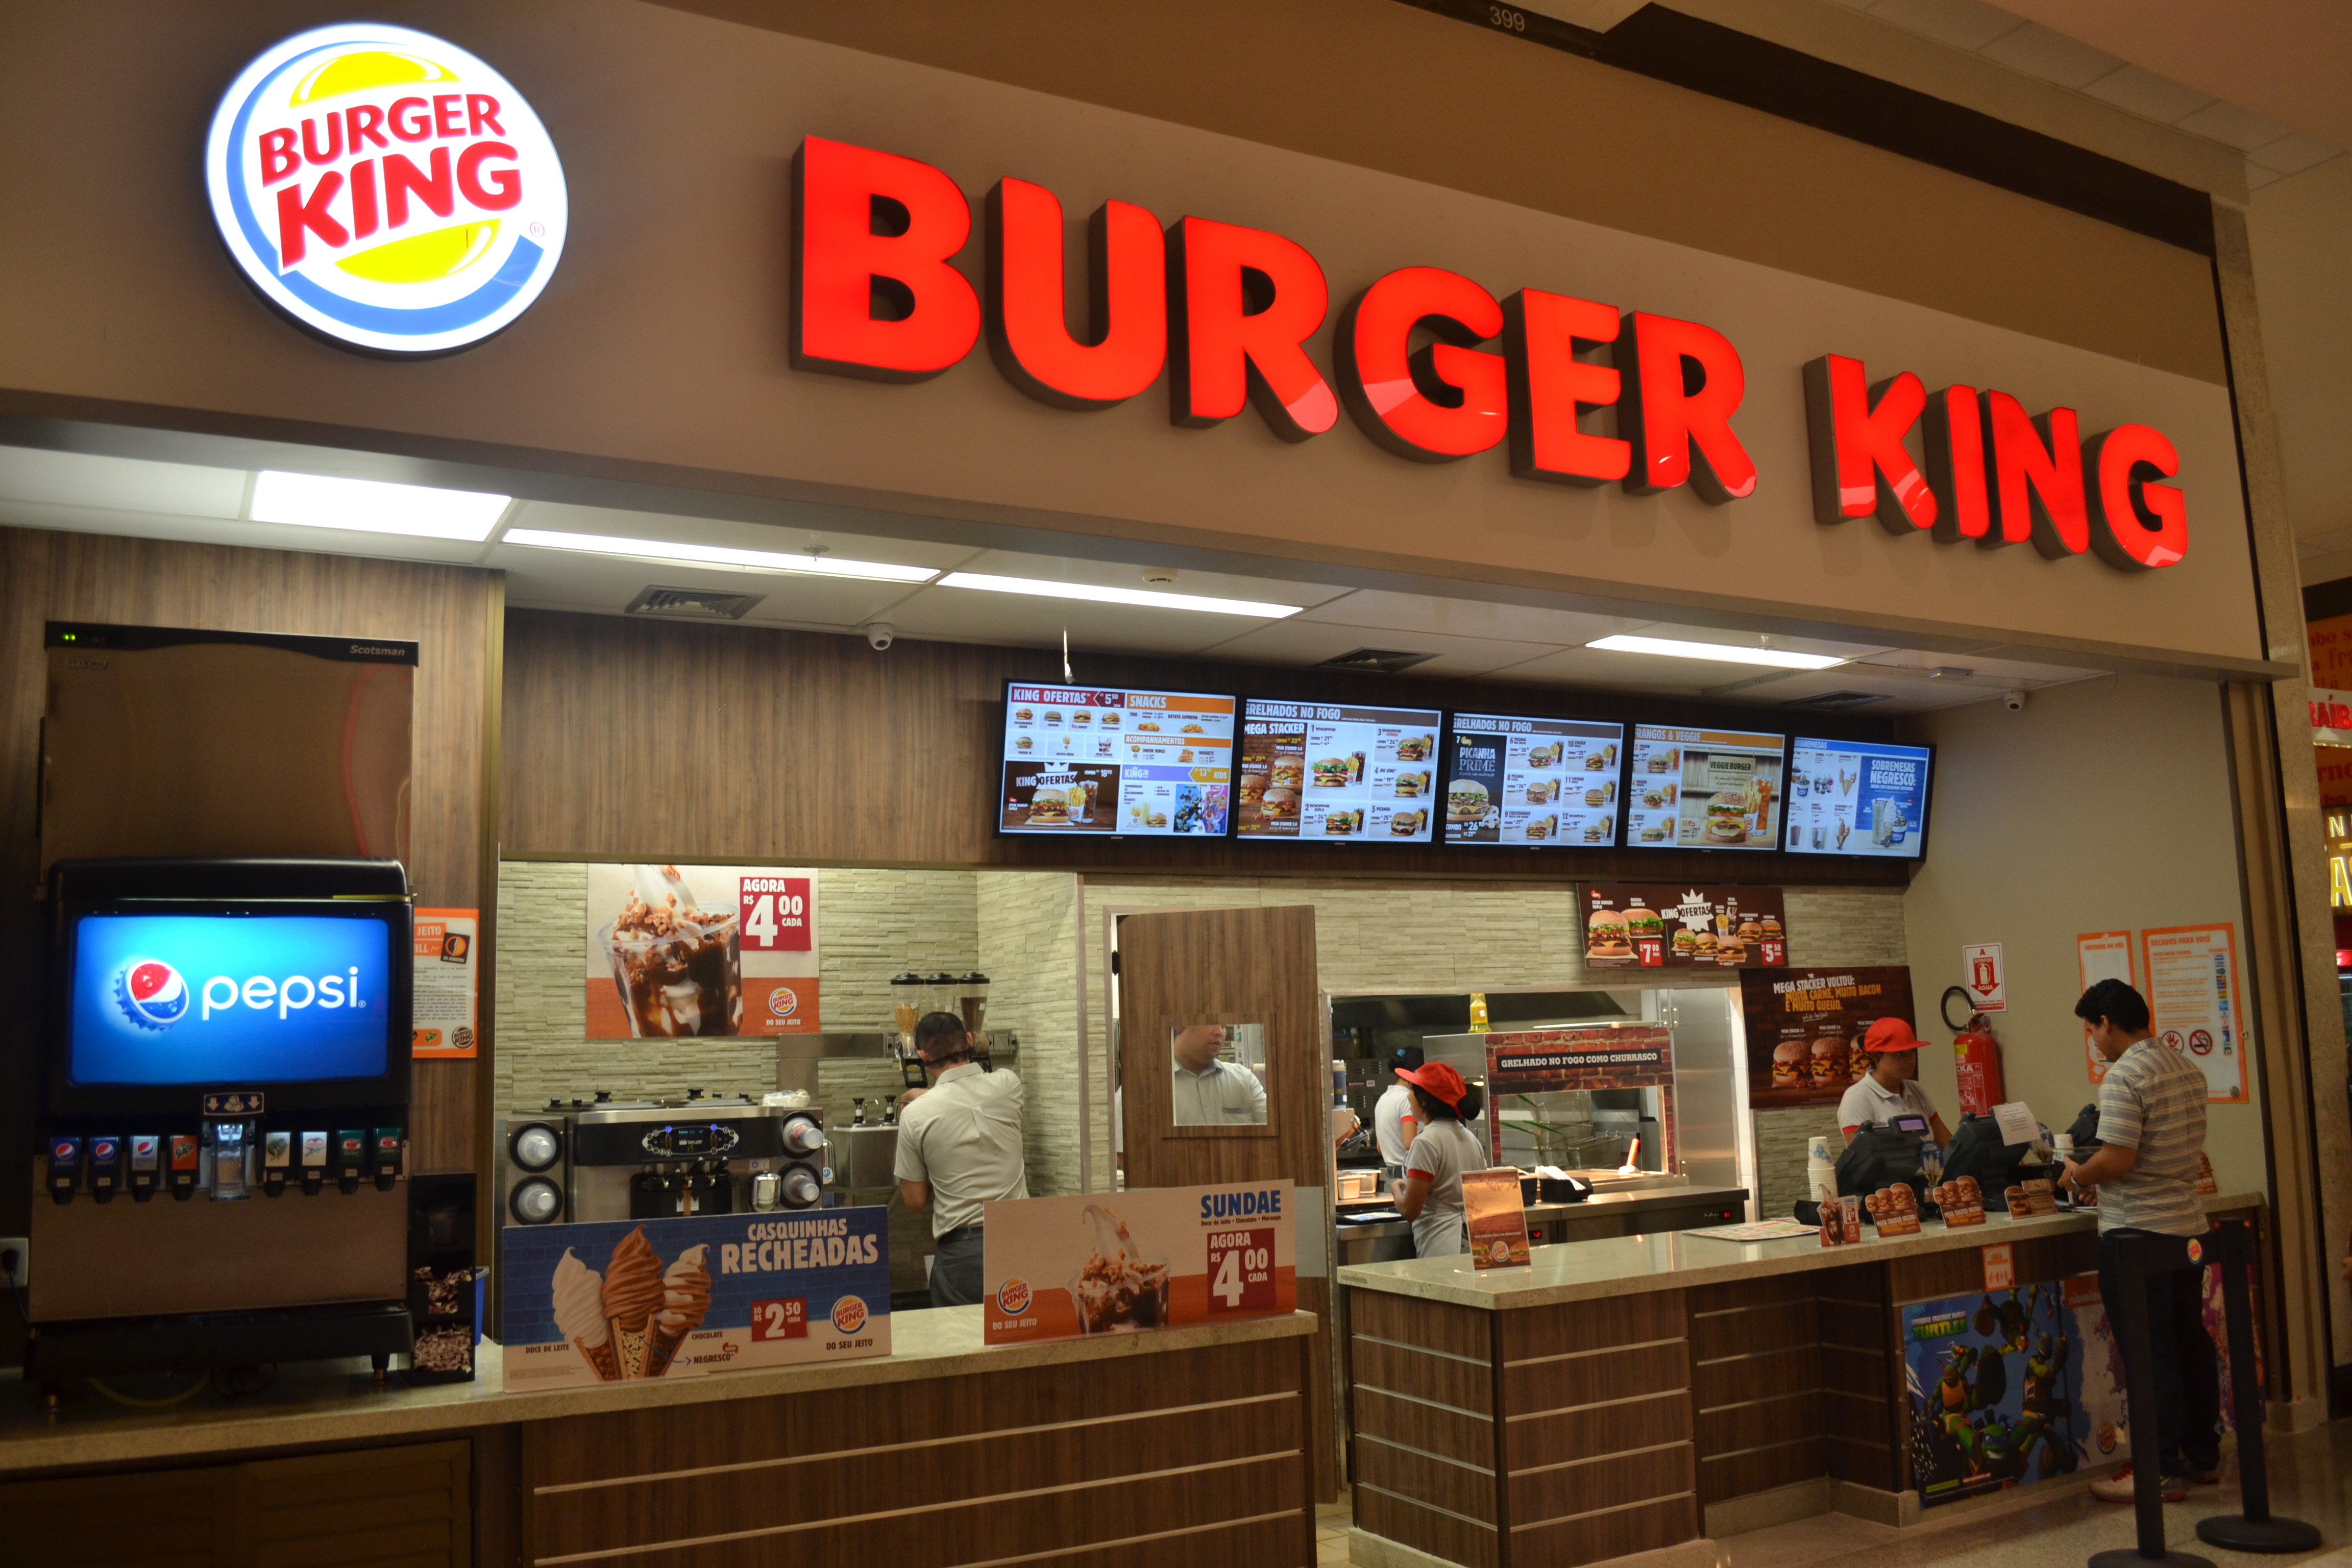 Além do excesso de horas trabalhadas, o inquérito apontou que o Burger King suprimia, de forma rotineira, o descanso semanal remunerado dos funcionários, que eram obrigados a trabalhar numa frequência de sete ou mais dias consecutivos sem folga